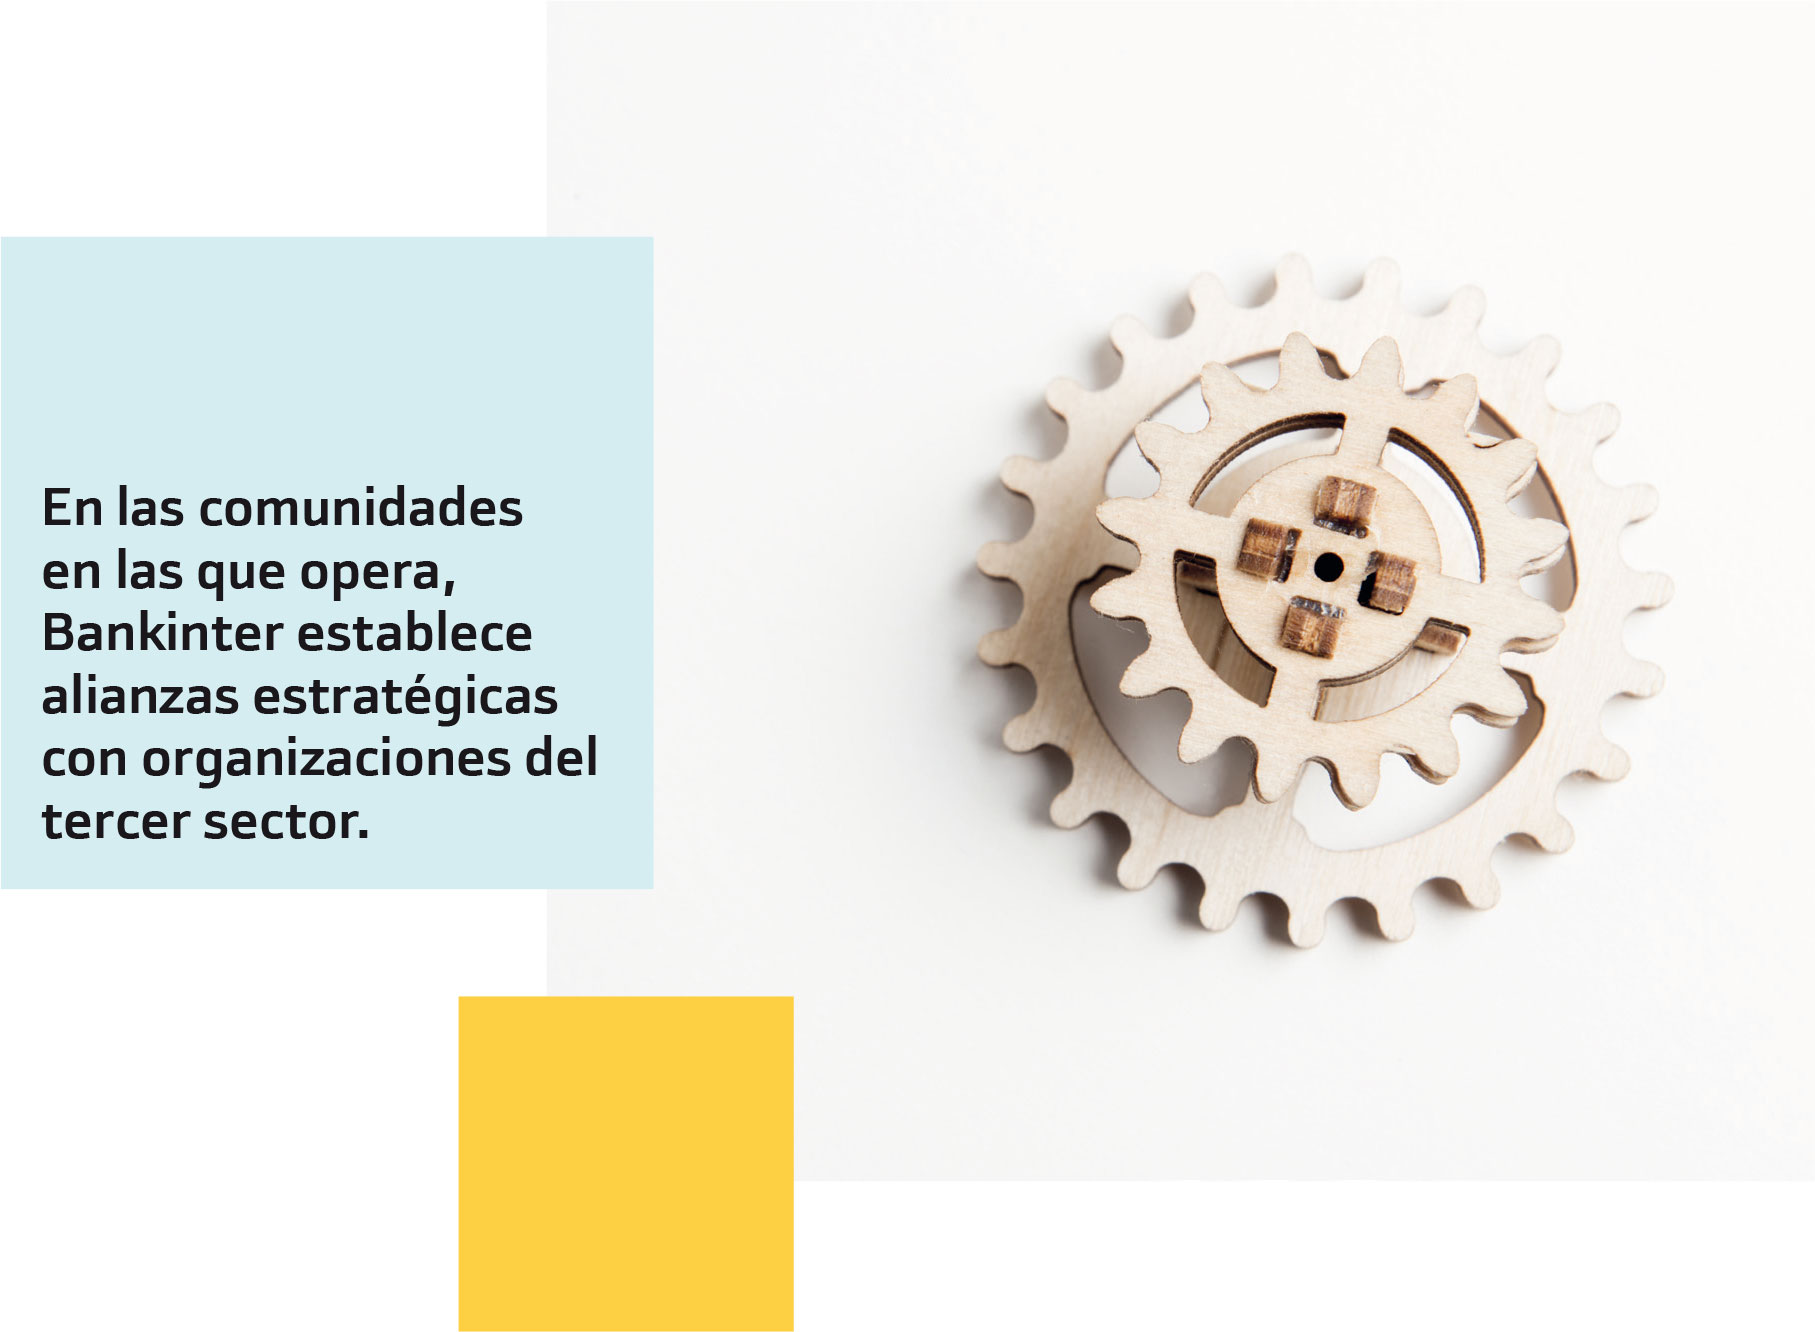 En las comunidades en las que opera, Bankinter establece alianzas estratégicas con organizaciones del tercer sector.